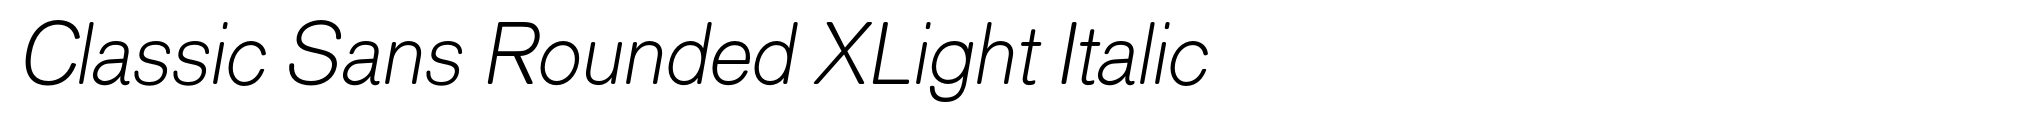 Classic Sans Rounded XLight Italic image